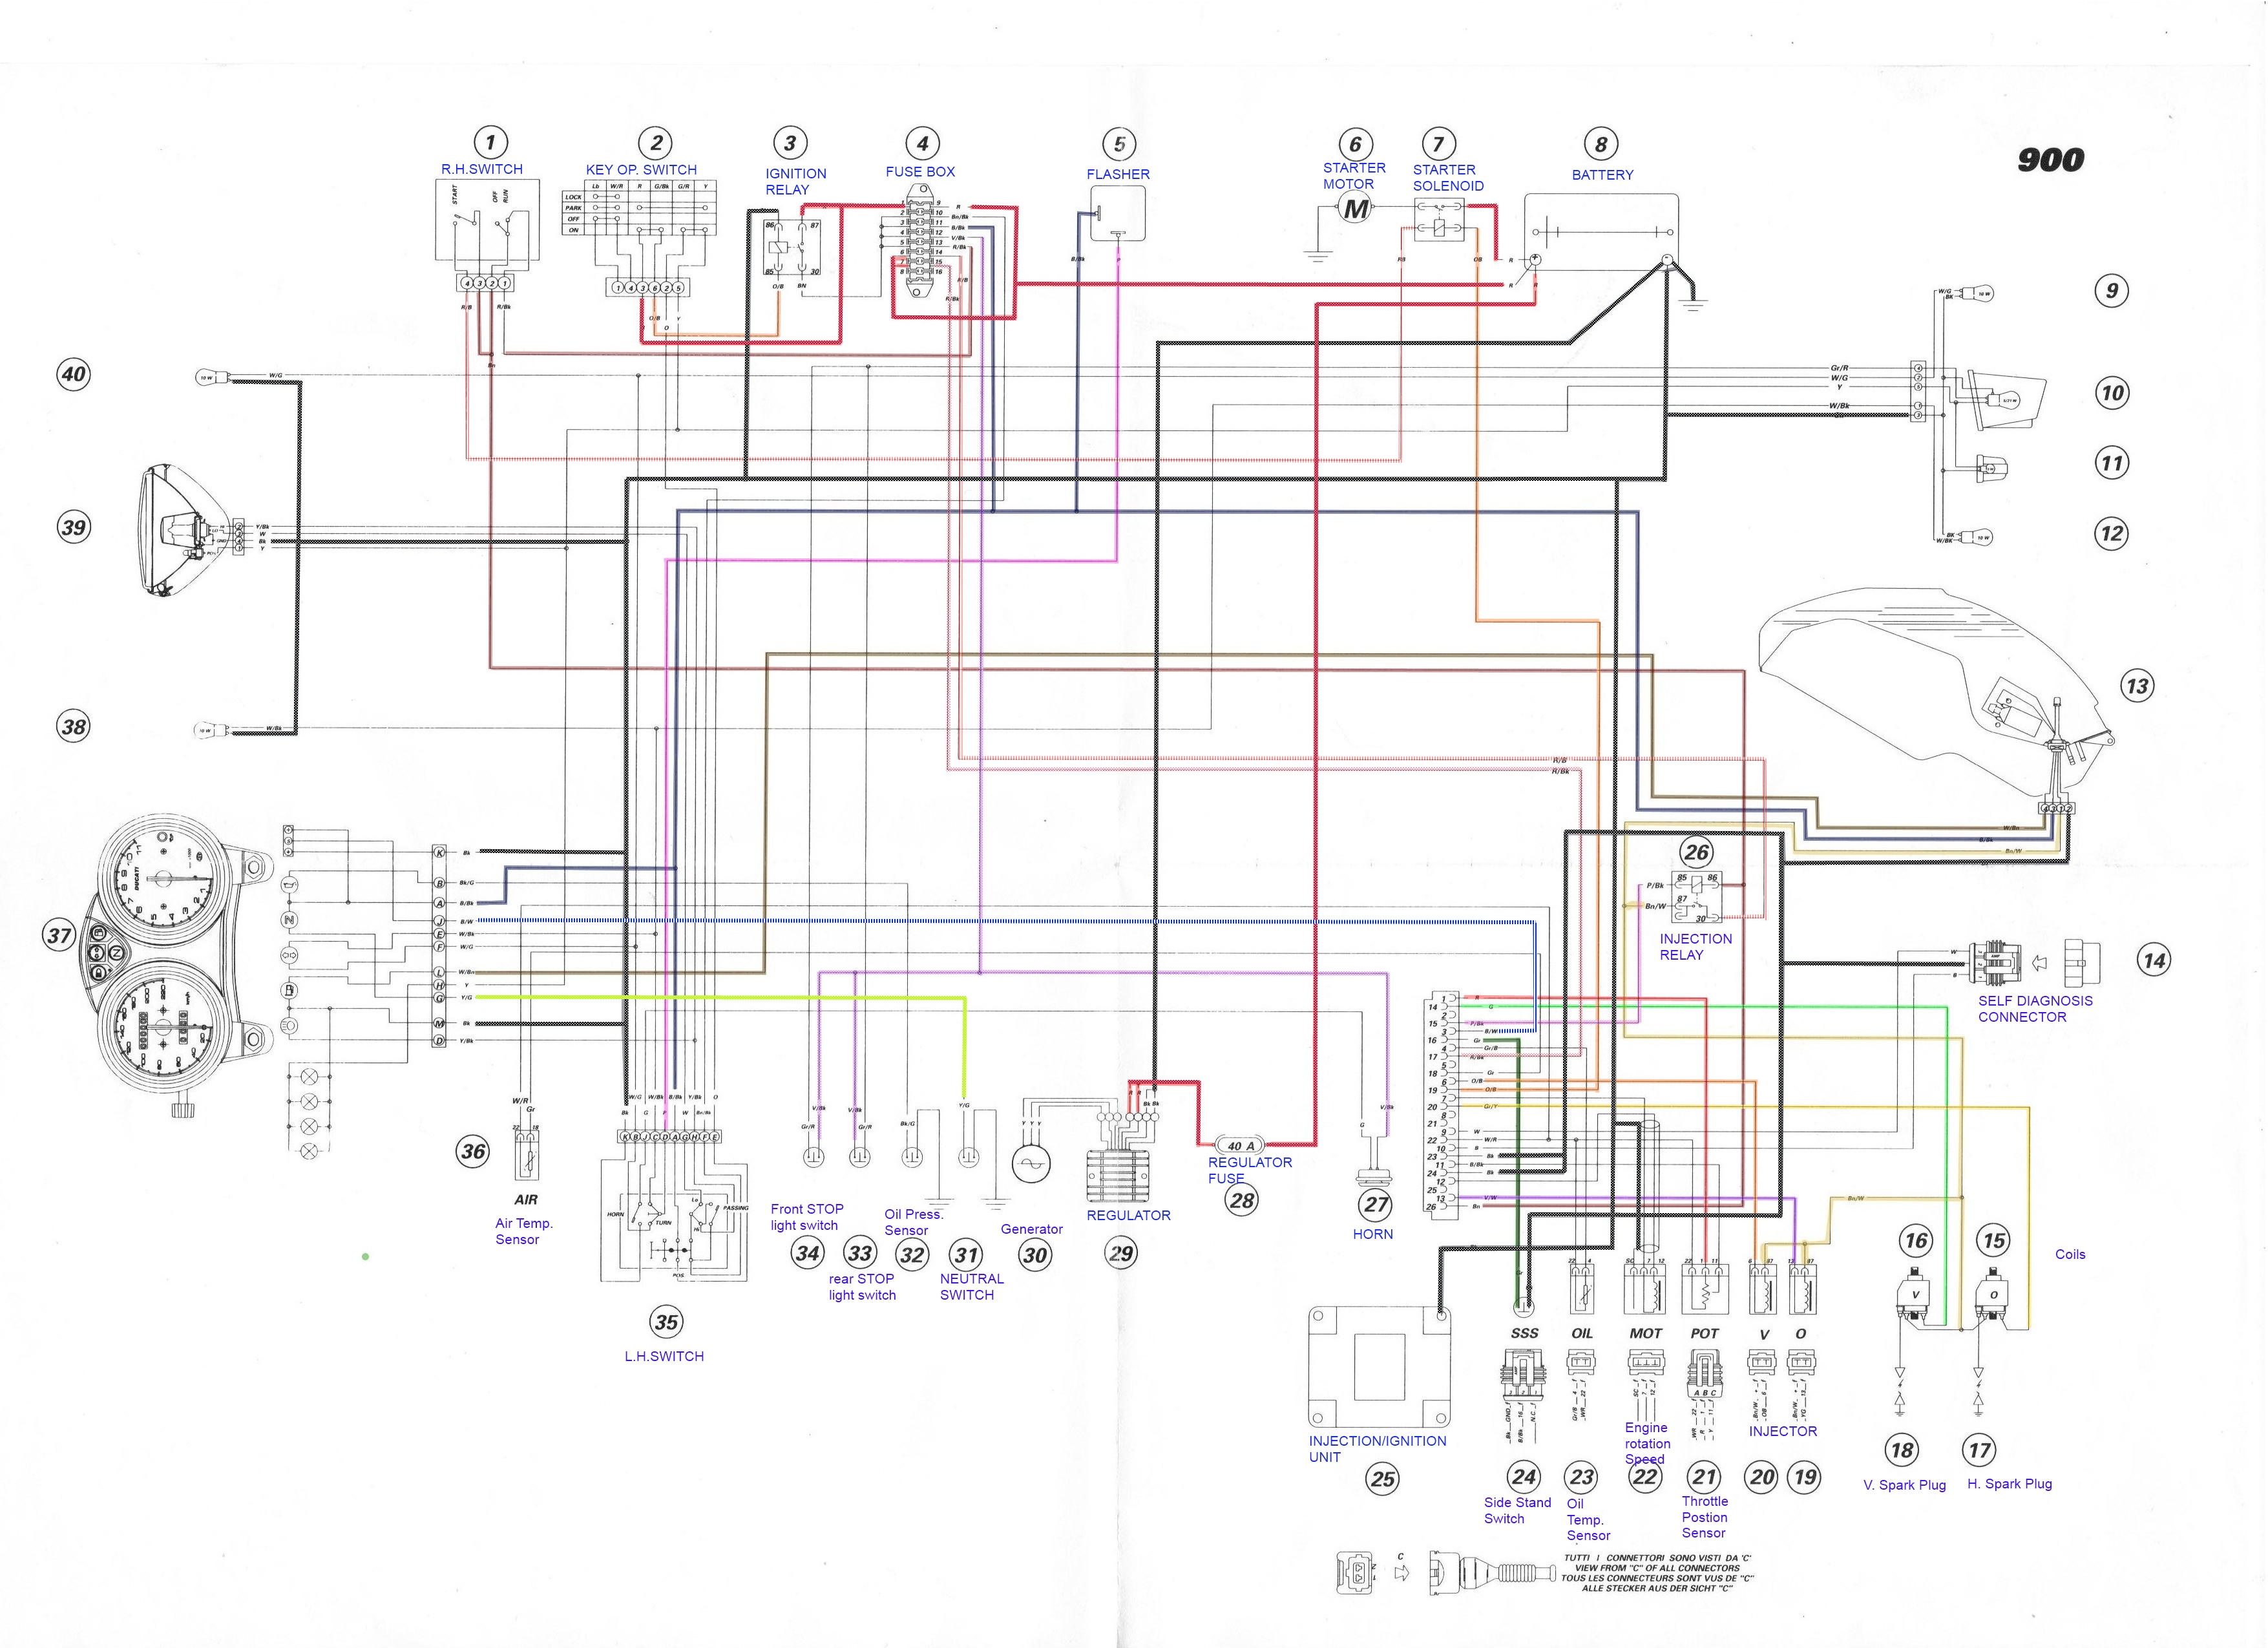 Need Help 750/800/1000ie wiring diagrams - Ducati.ms - The ... ducati monster 620 ie wiring diagram 